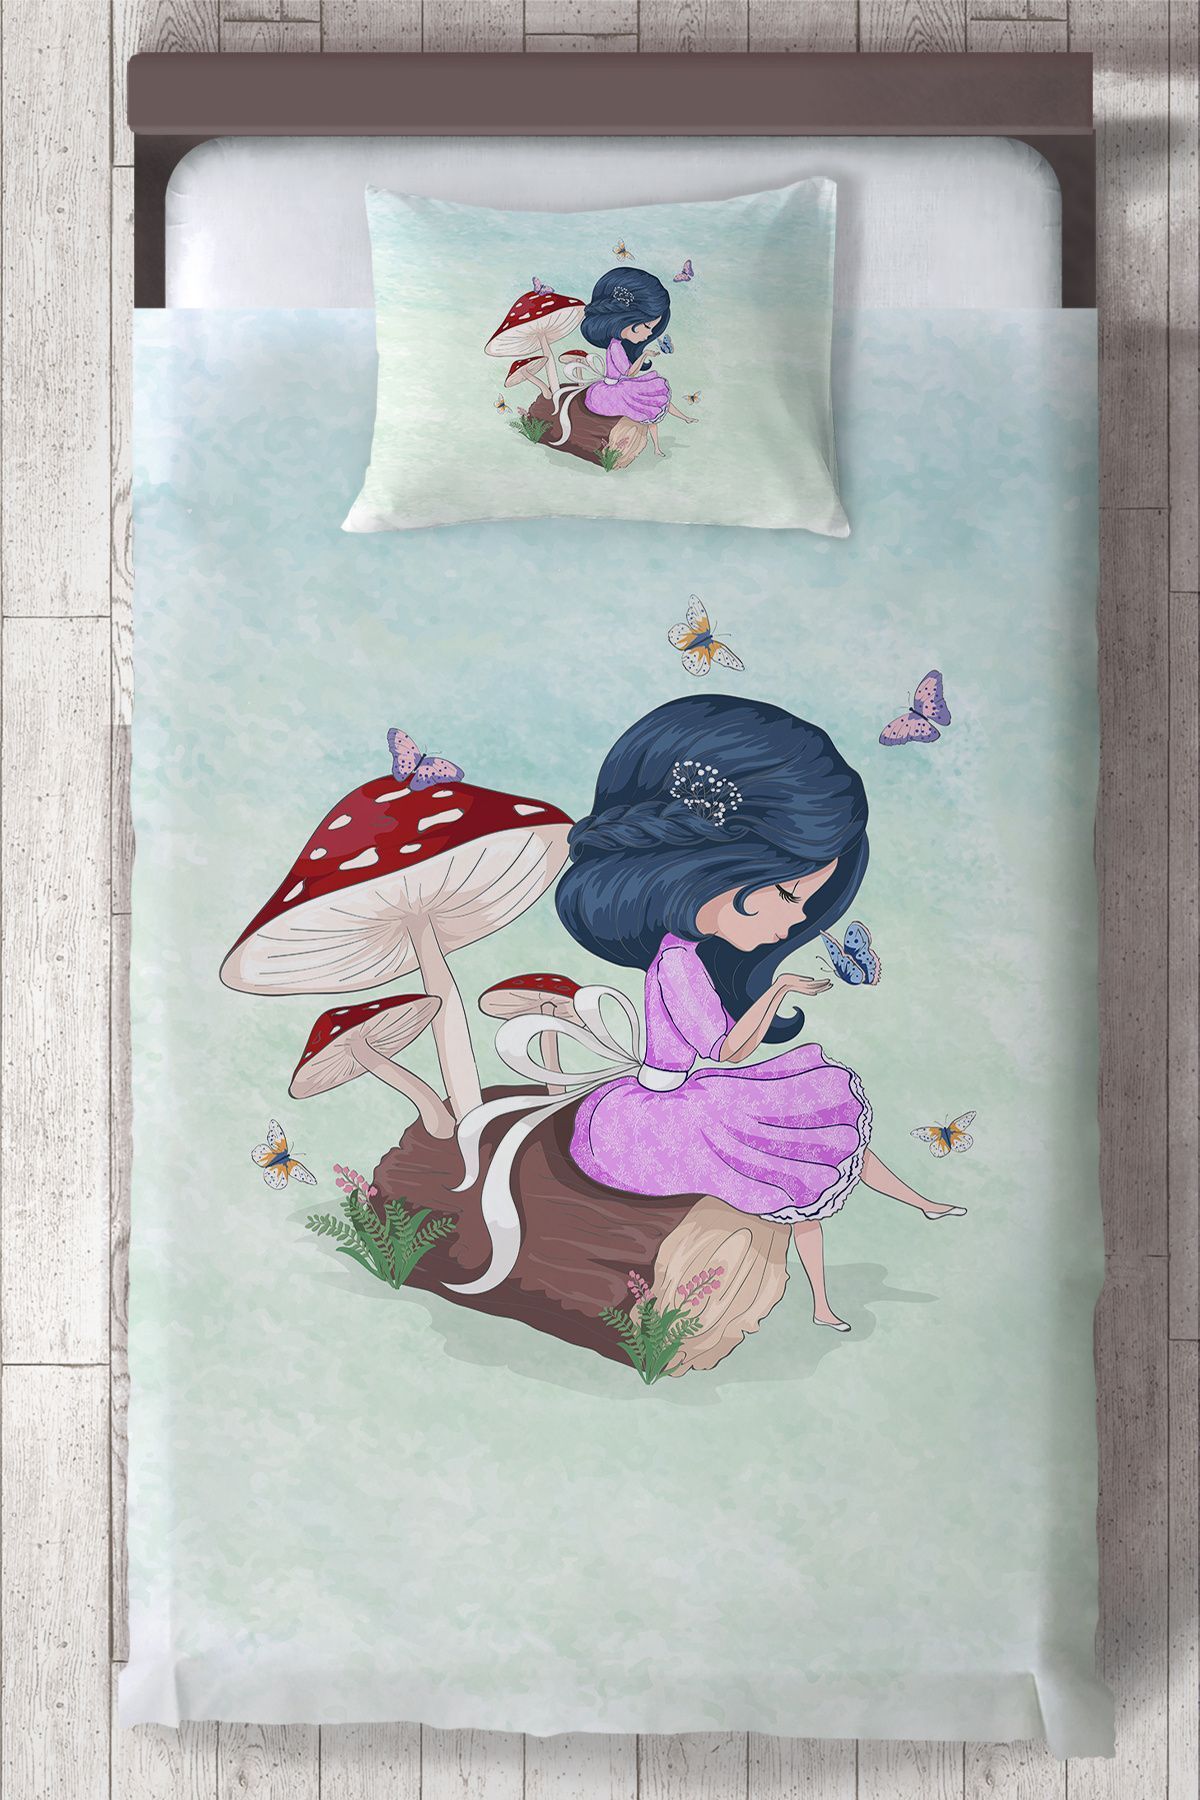 Ceritti Bebek ve Çocuk Odası Kelebekli Motifli Prenses Kız Desenli, Organik Boyalı, Renkli Yatak Örtüsü Seti